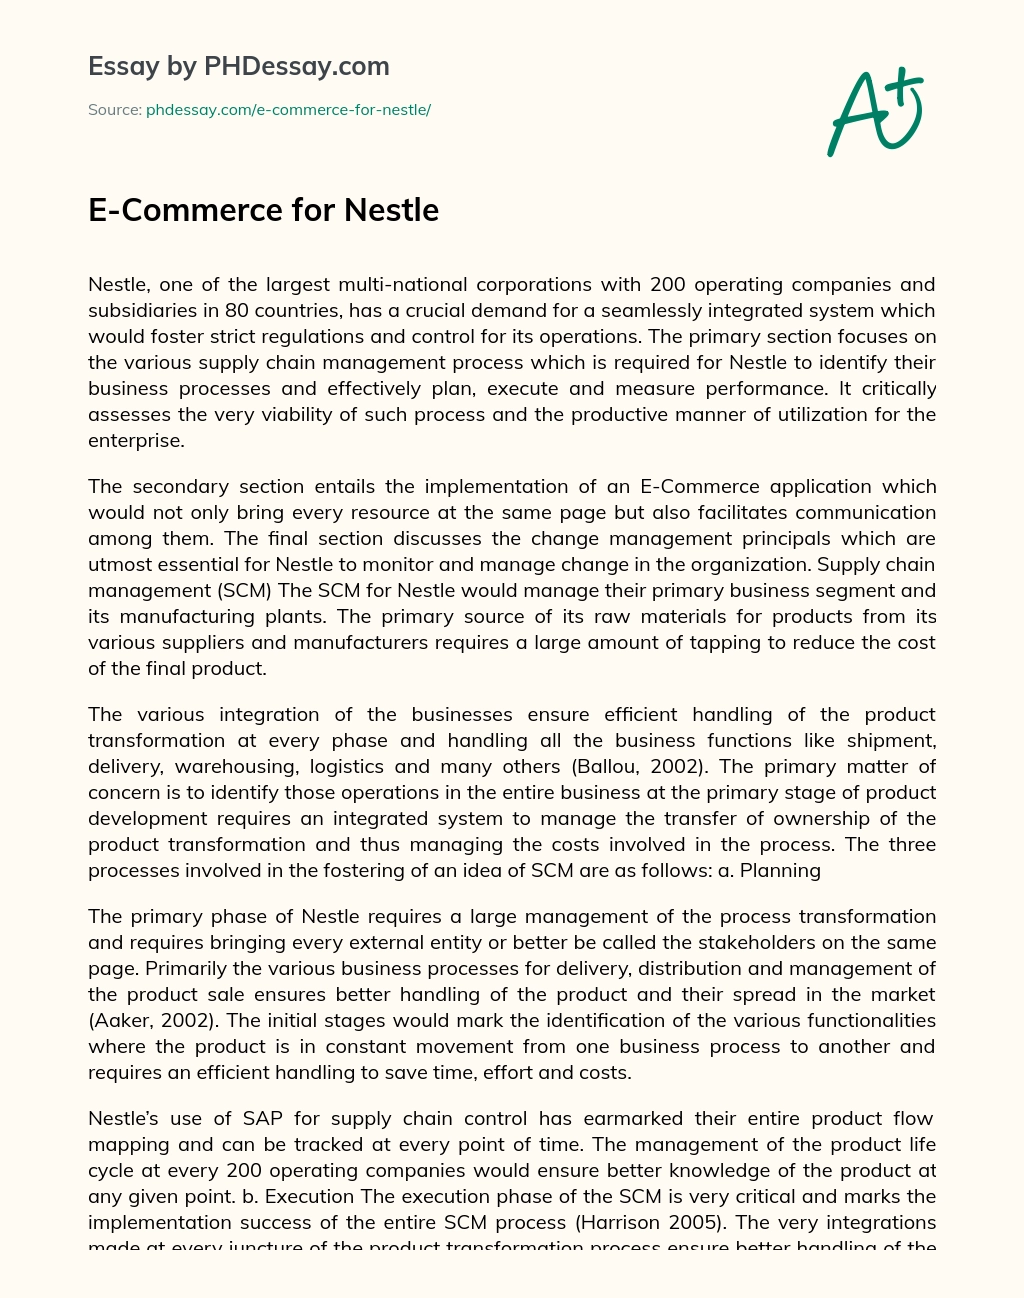 E-Commerce for Nestle essay